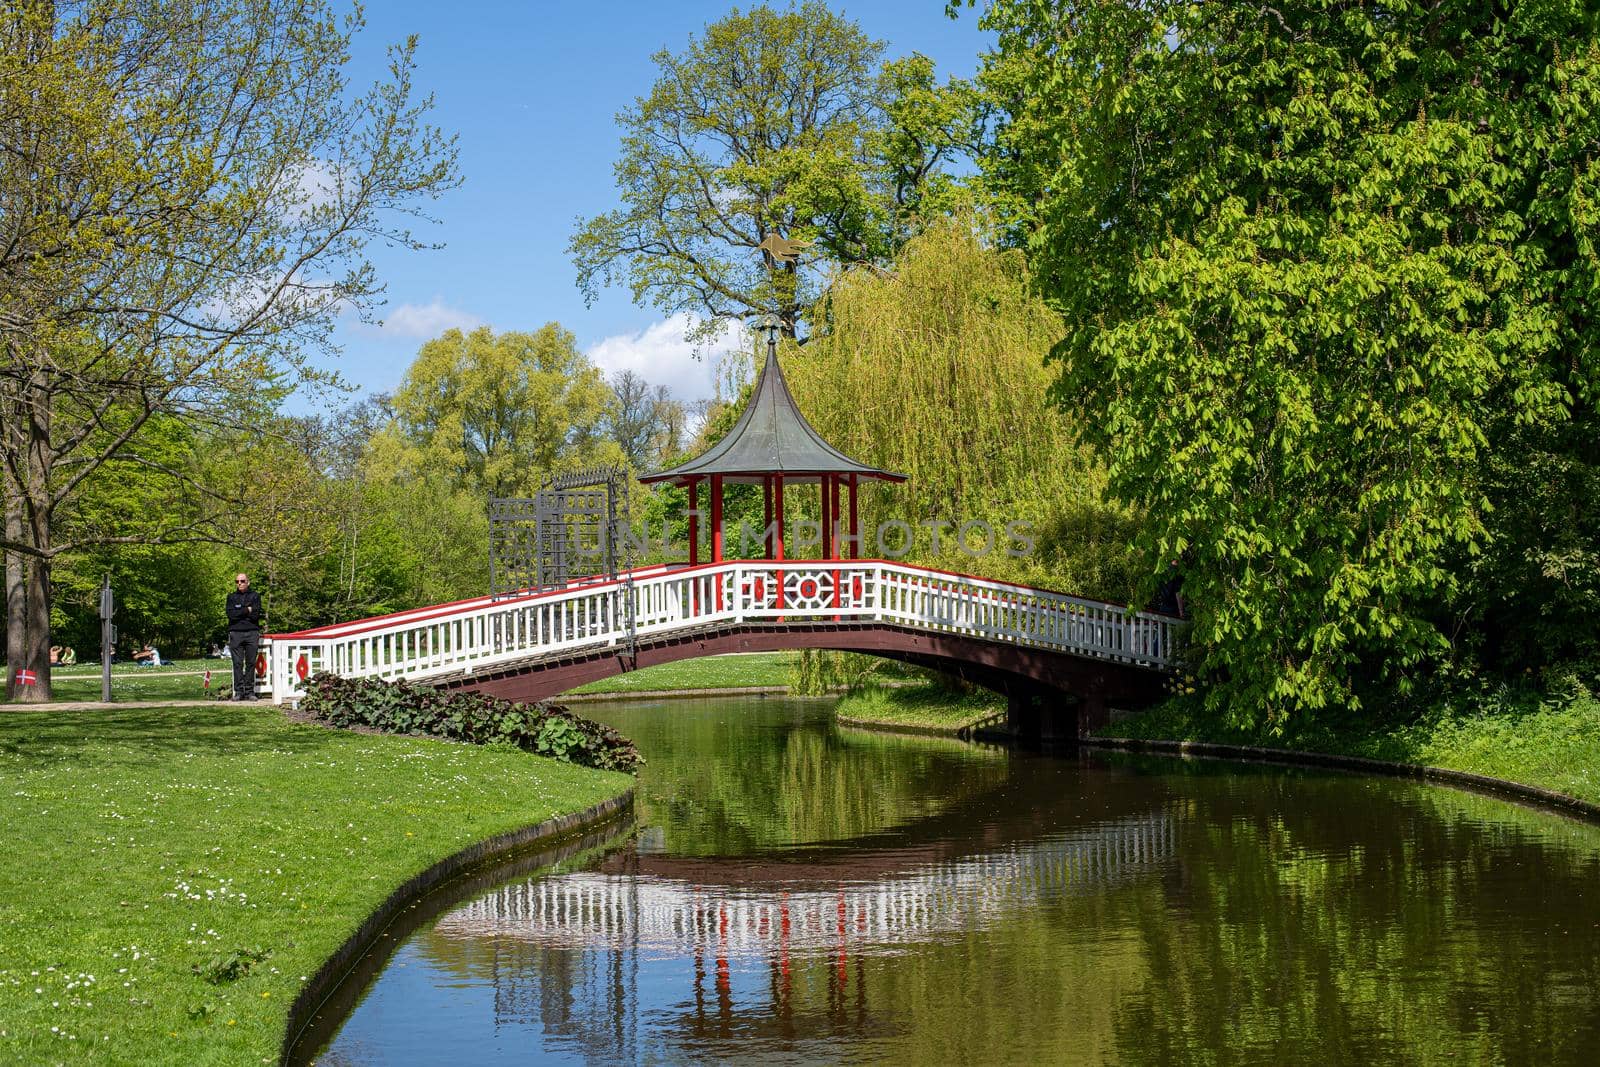 Chinese Bridge in Frederiksberg Park, Denmark by oliverfoerstner